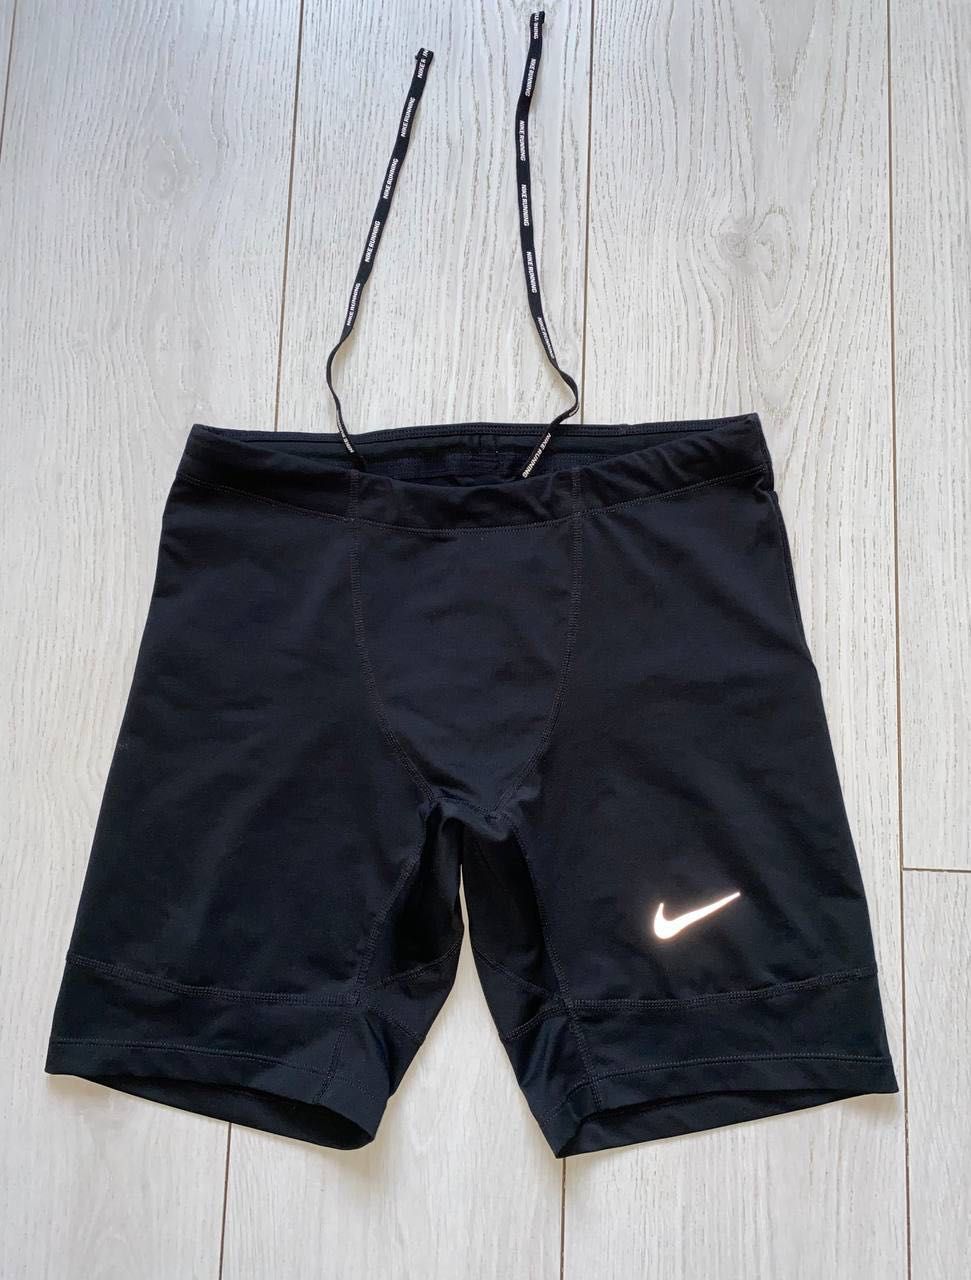 чоловічі спортивні шорти Nike dri-fit
size L